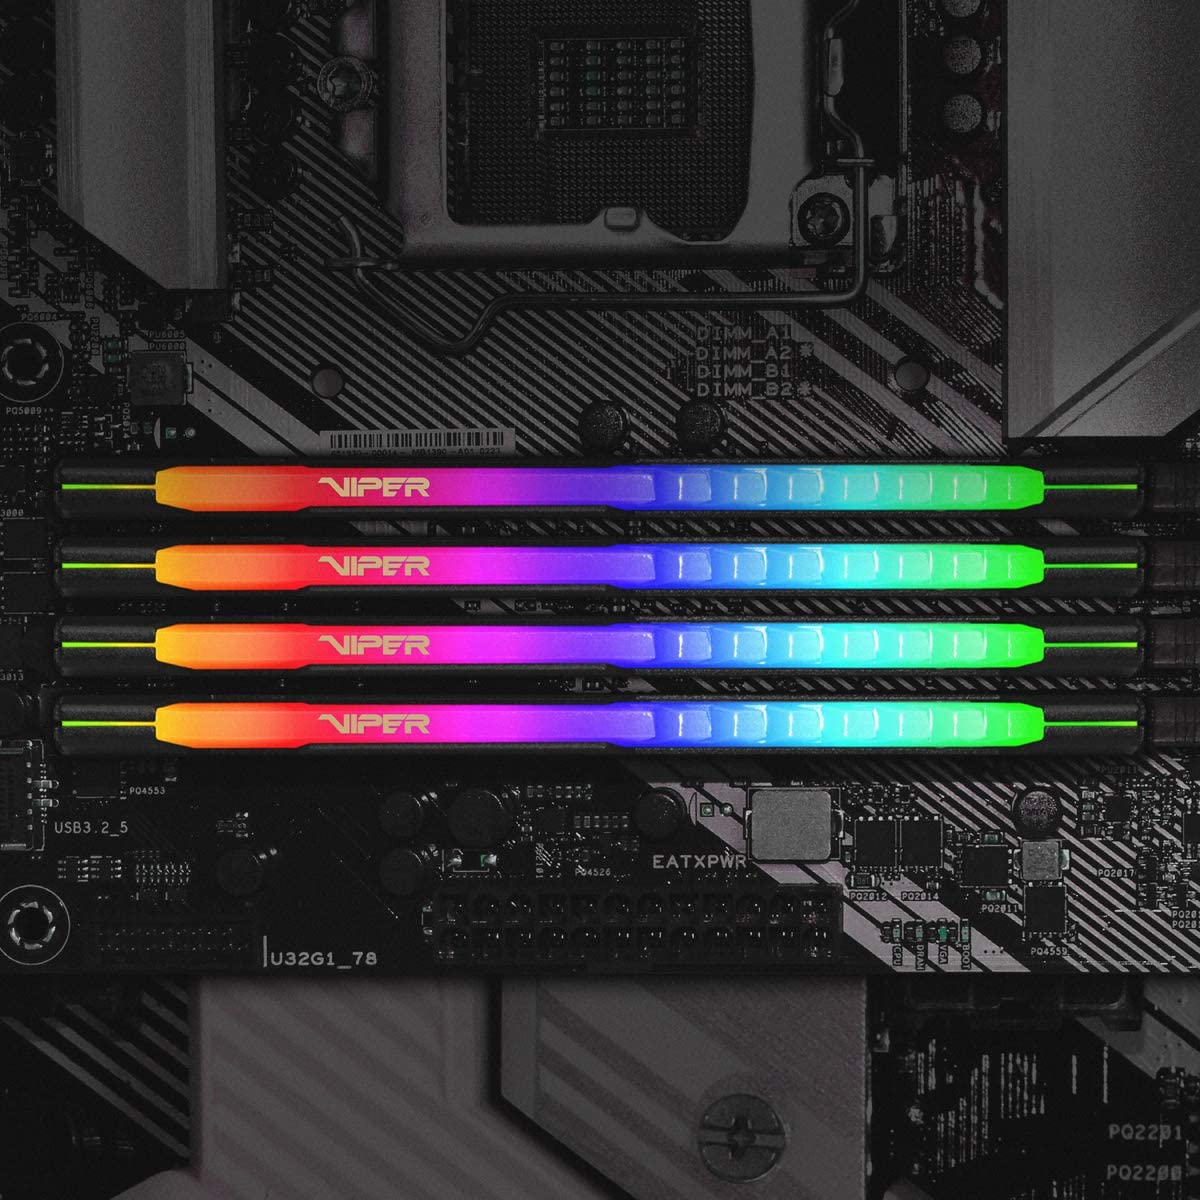 La RAM Patriot Viper RGB W. 8GB DDR4-3200 es un módulo de memoria RAM para computadora de 8 GB de capacidad y con una velocidad de 3200 MHz. 